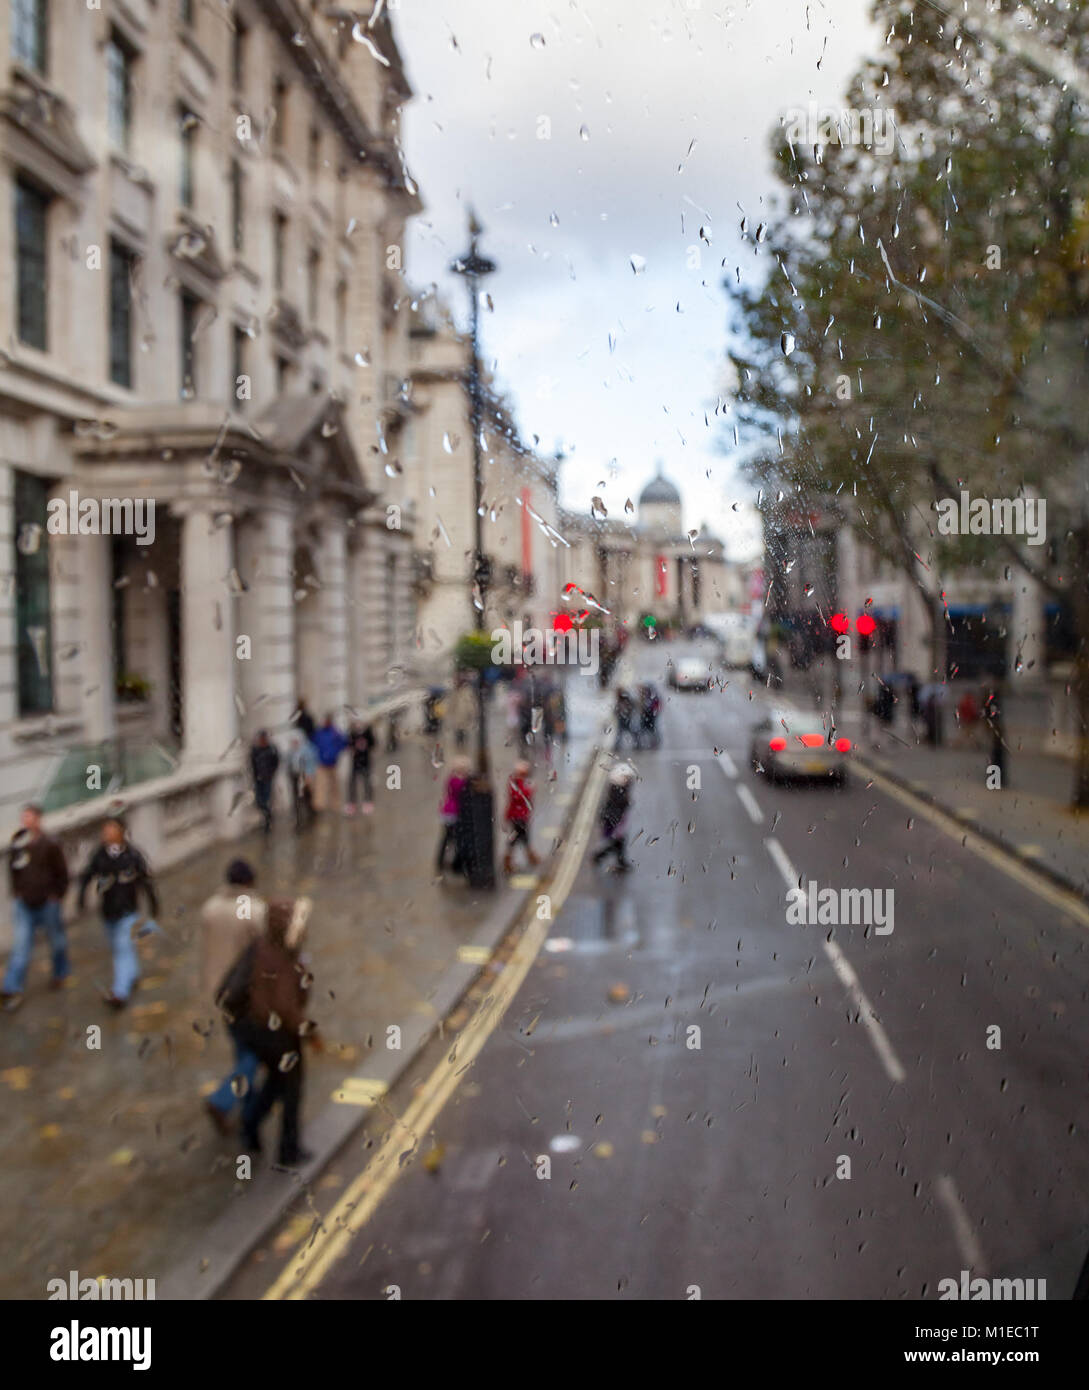 Scène de rue de Londres City vu à travers la vitre du bus Doubledecker couverte de gouttes de pluie - automne pluvieux concept Banque D'Images